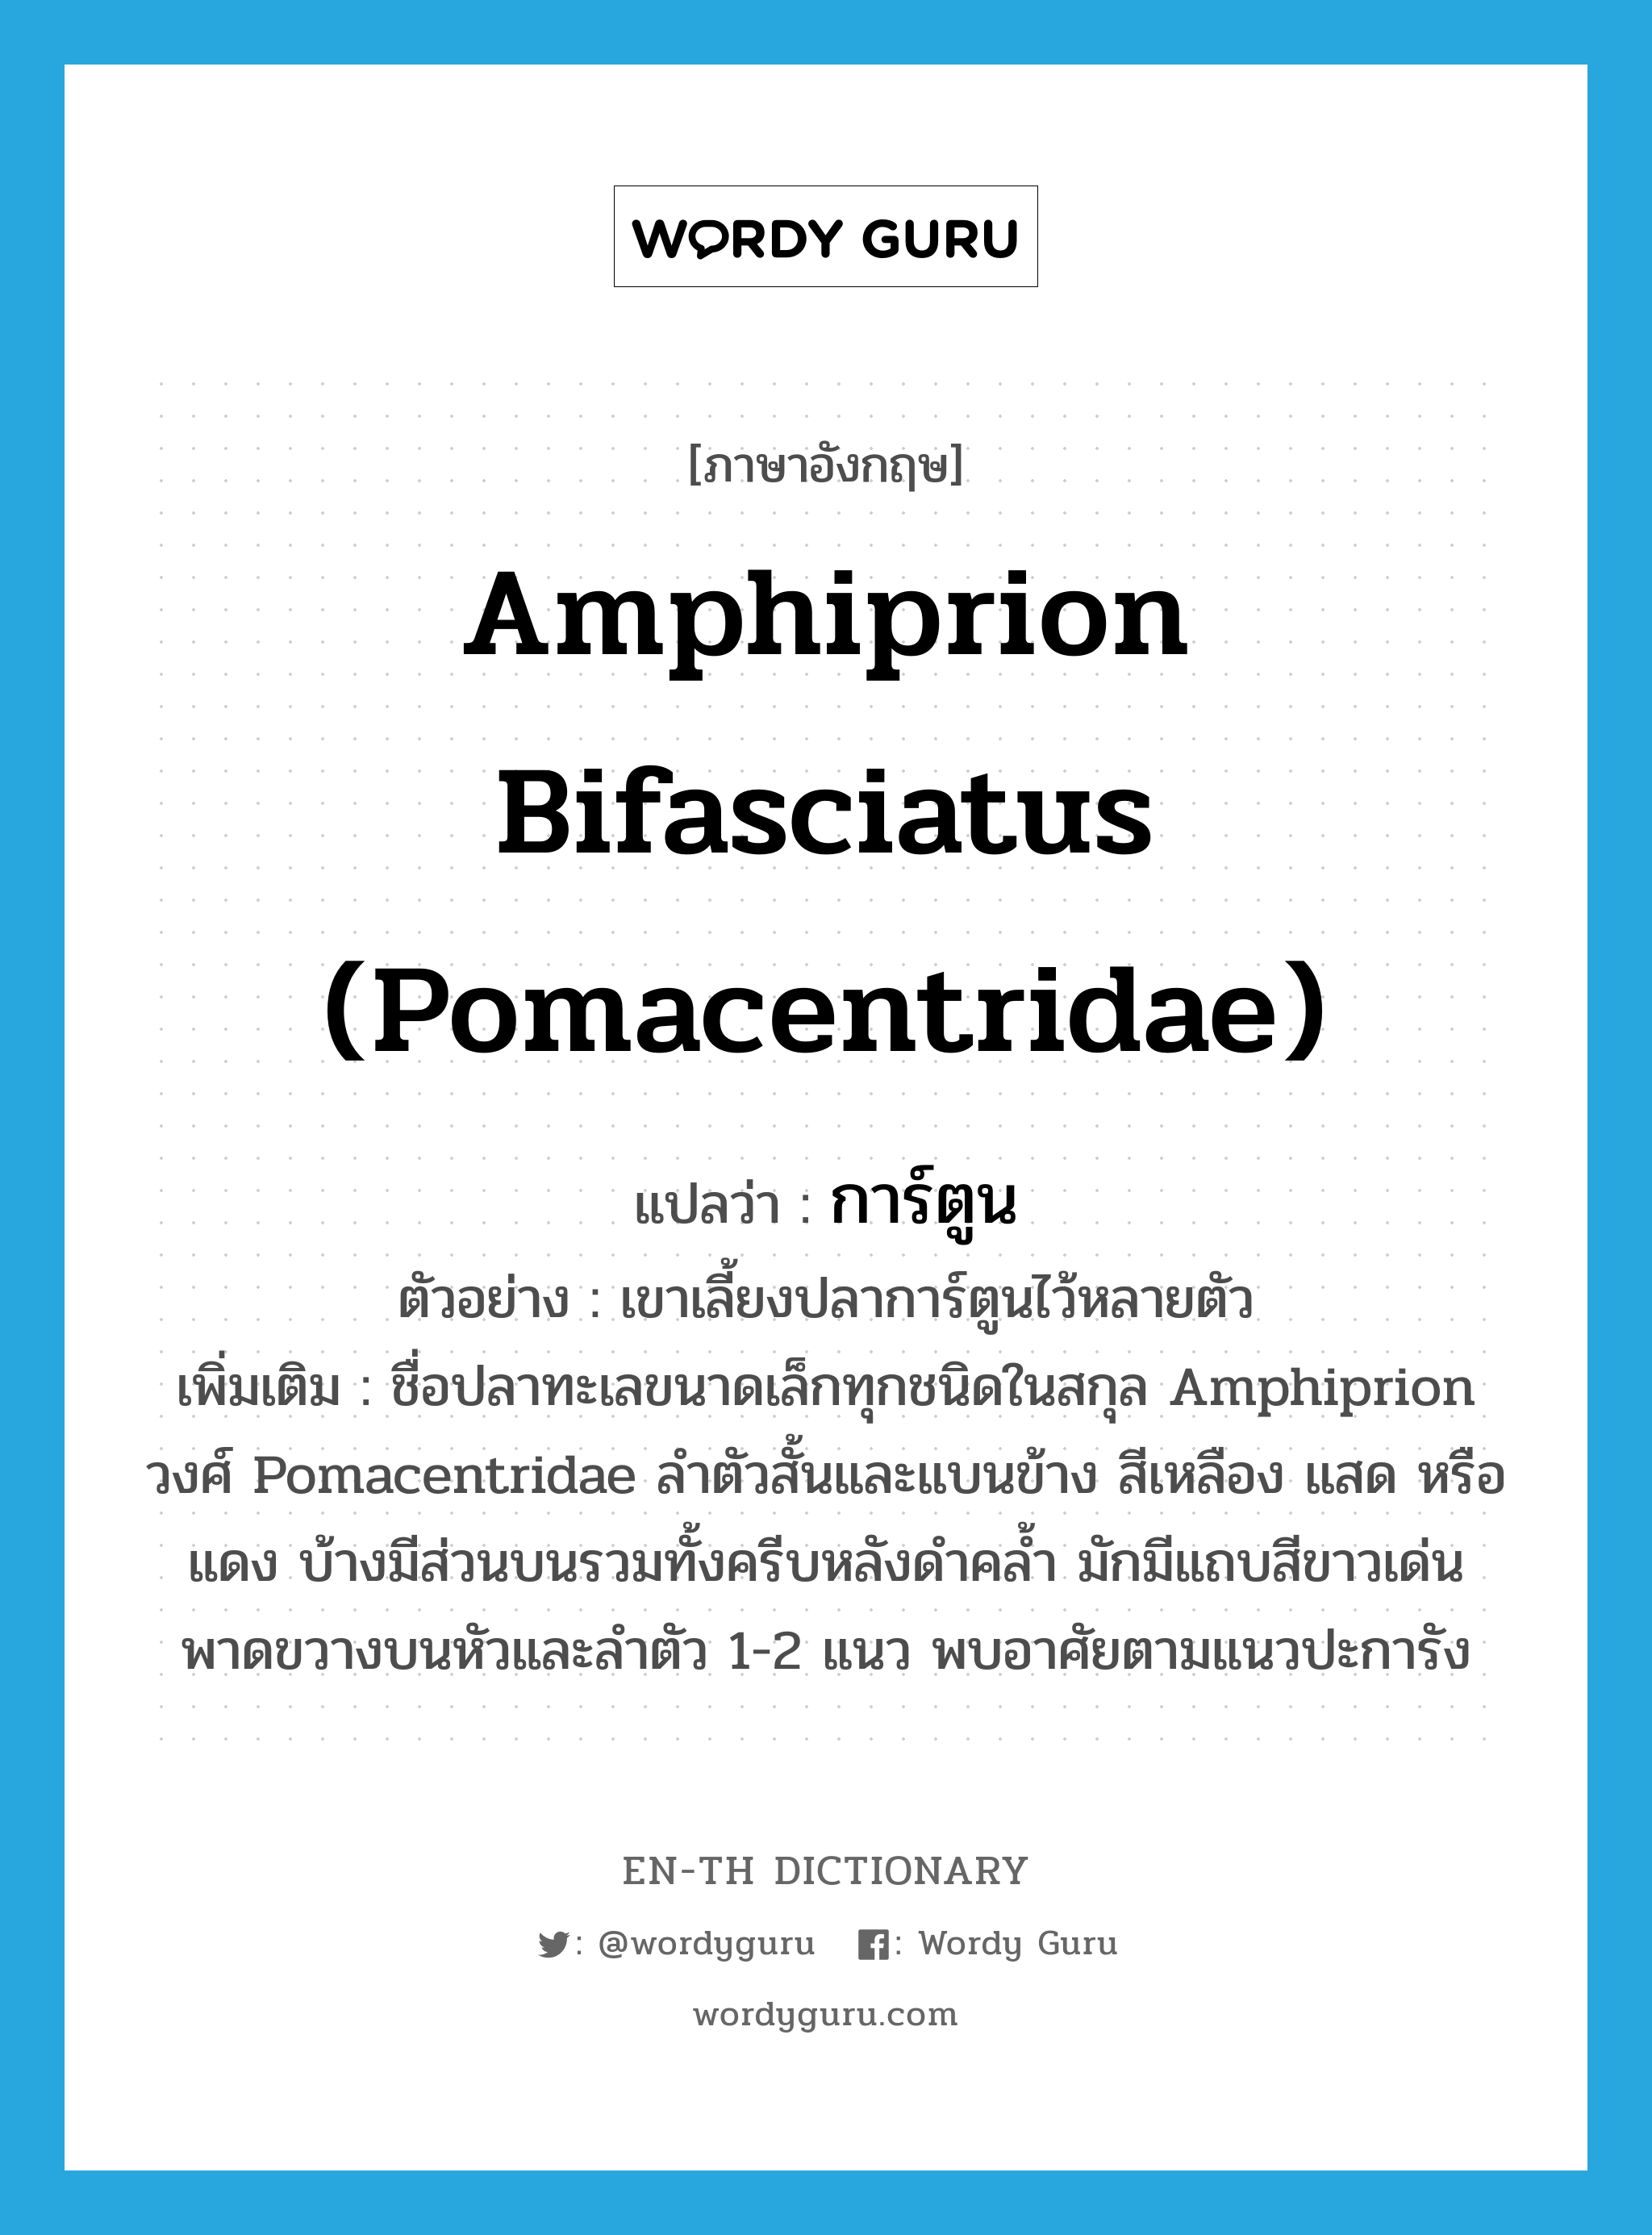 การ์ตูน ภาษาอังกฤษ?, คำศัพท์ภาษาอังกฤษ การ์ตูน แปลว่า Amphiprion bifasciatus (Pomacentridae) ประเภท N ตัวอย่าง เขาเลี้ยงปลาการ์ตูนไว้หลายตัว เพิ่มเติม ชื่อปลาทะเลขนาดเล็กทุกชนิดในสกุล Amphiprion วงศ์ Pomacentridae ลำตัวสั้นและแบนข้าง สีเหลือง แสด หรือแดง บ้างมีส่วนบนรวมทั้งครีบหลังดำคล้ำ มักมีแถบสีขาวเด่นพาดขวางบนหัวและลำตัว 1-2 แนว พบอาศัยตามแนวปะการัง หมวด N